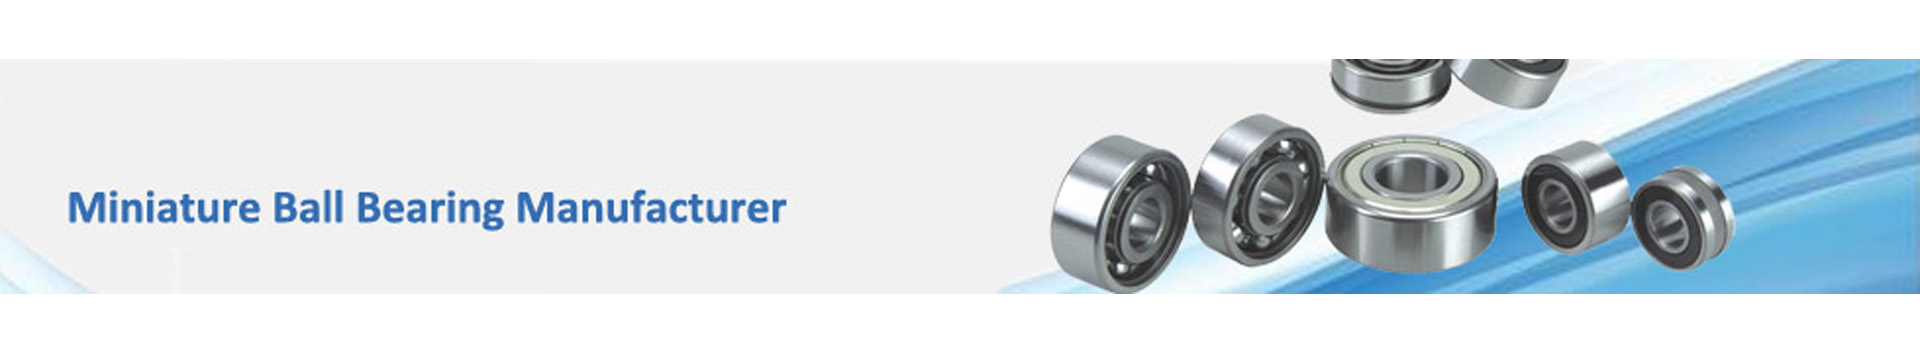 Fitrun bearing Co.ltd Xu Feng Tool Tech Group Limited